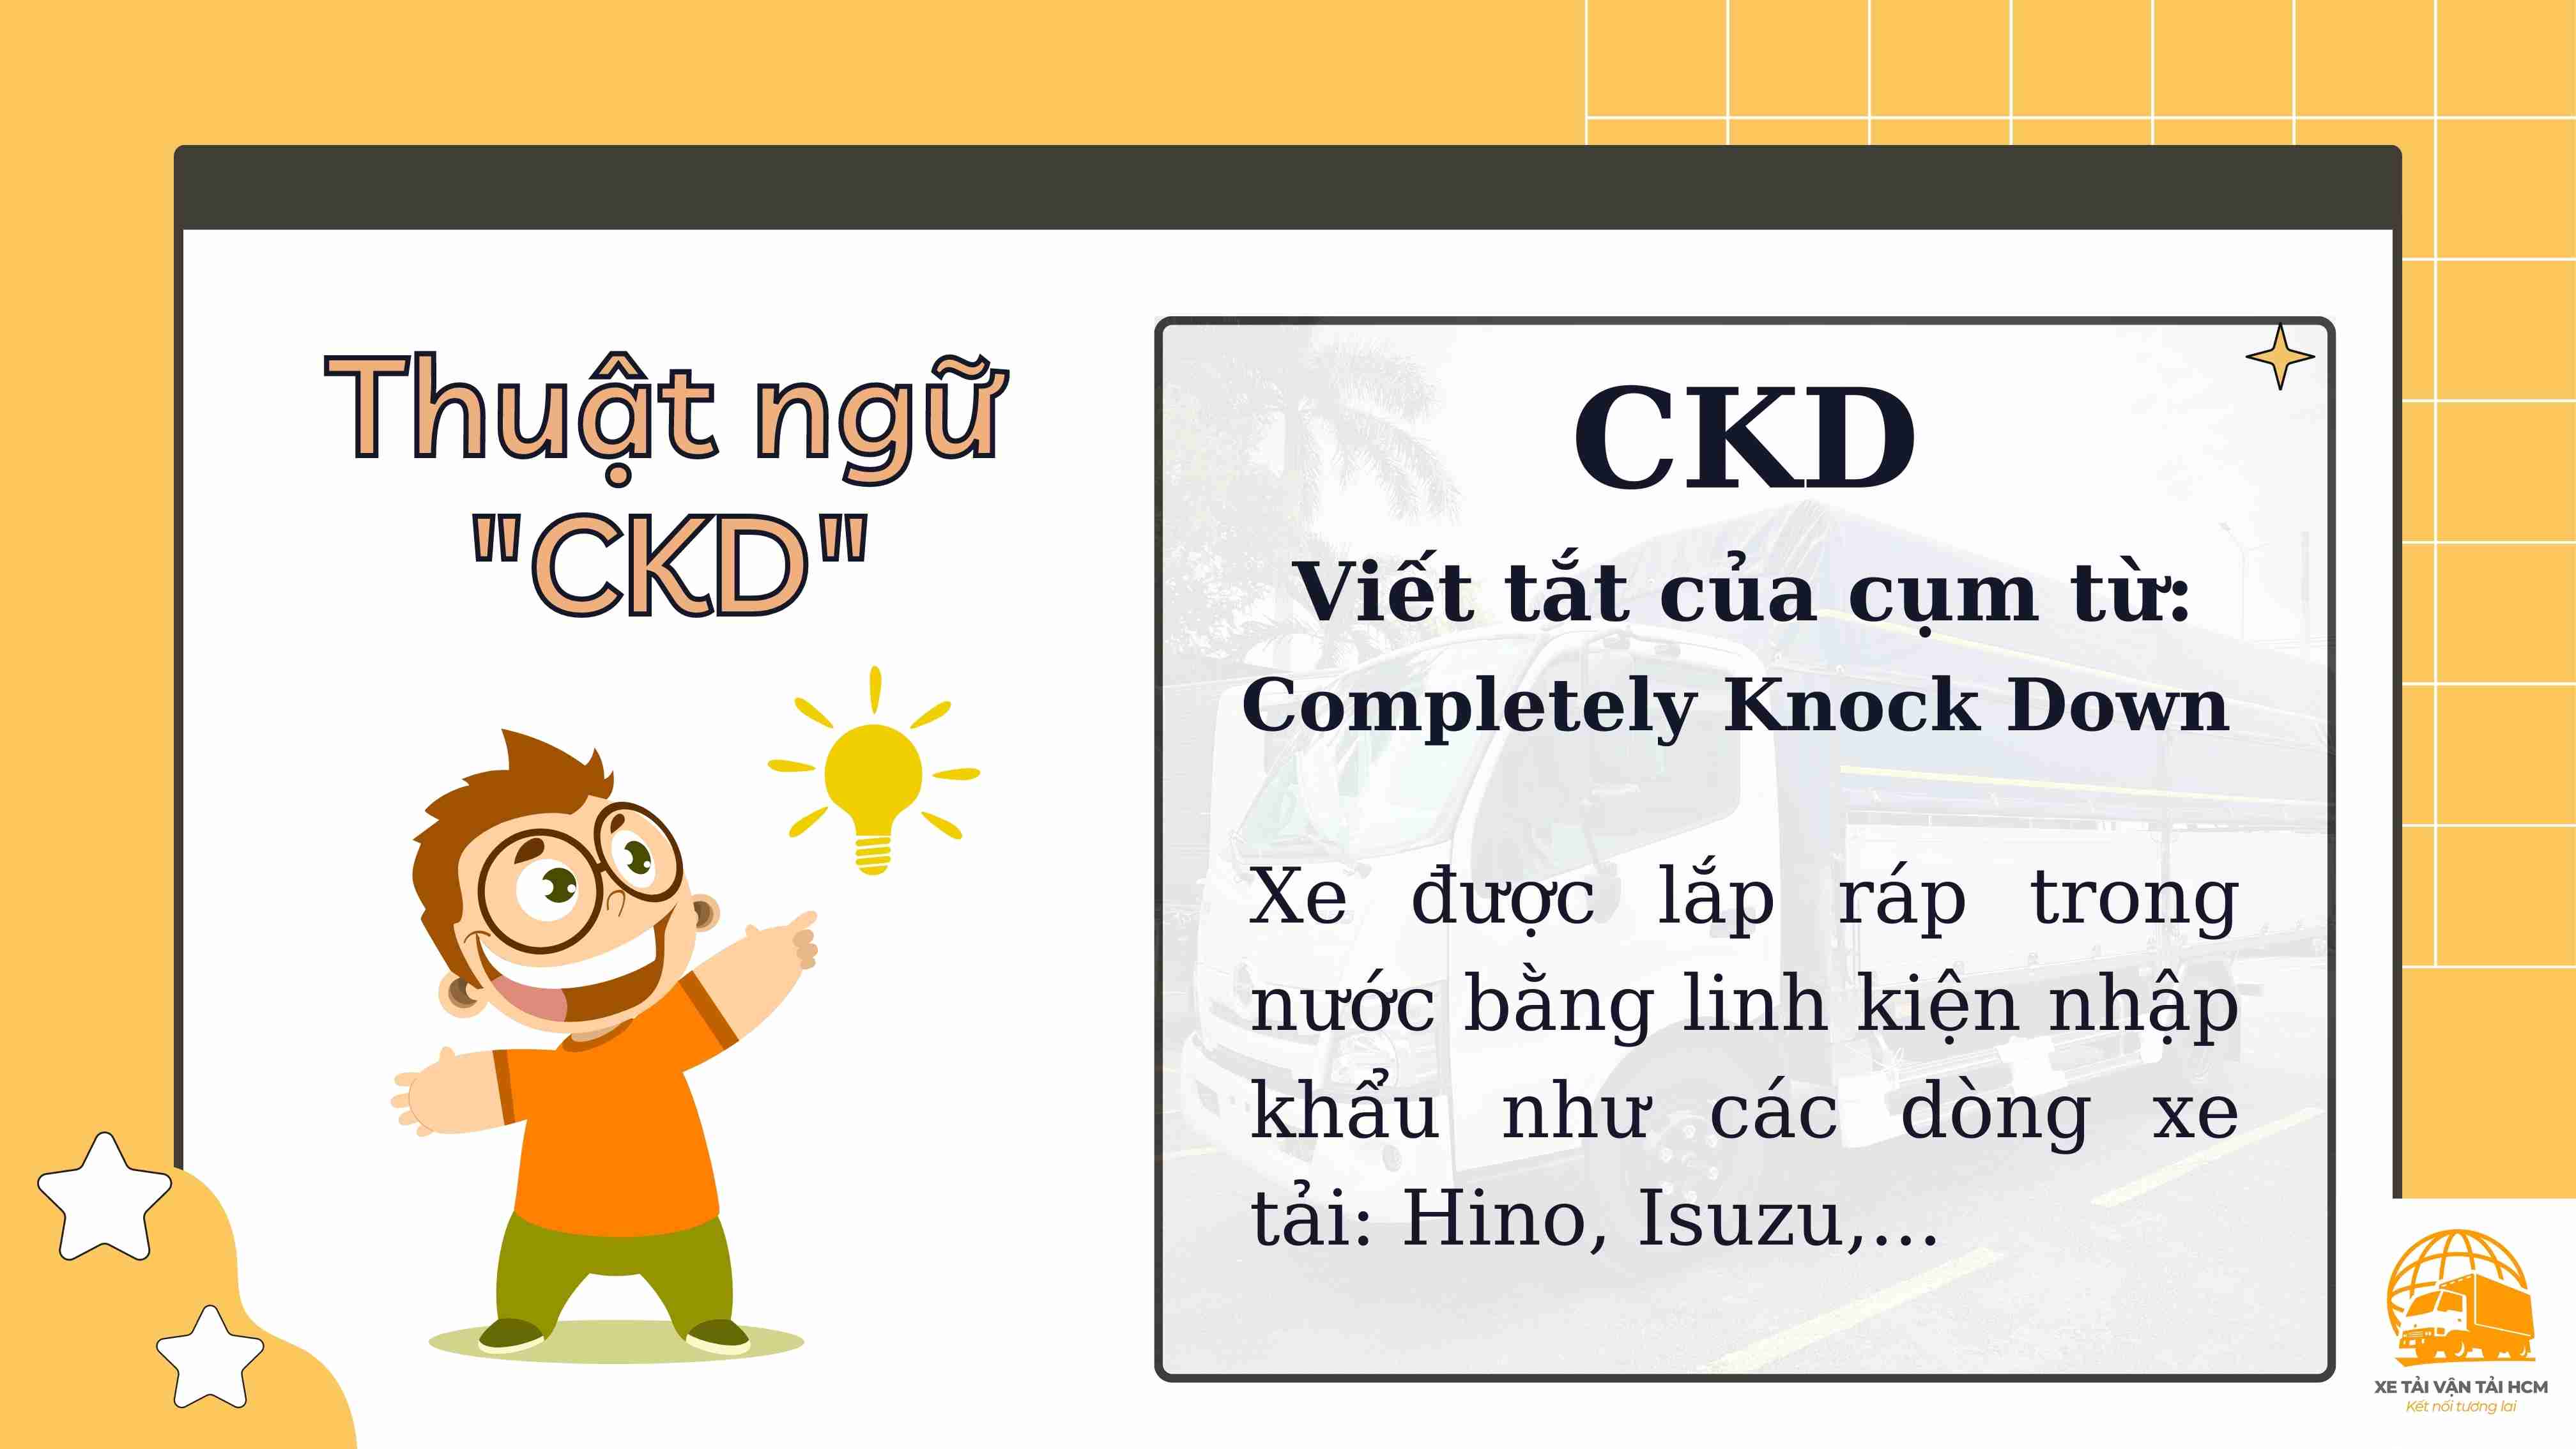 Thuật ngữ CKD là gì?